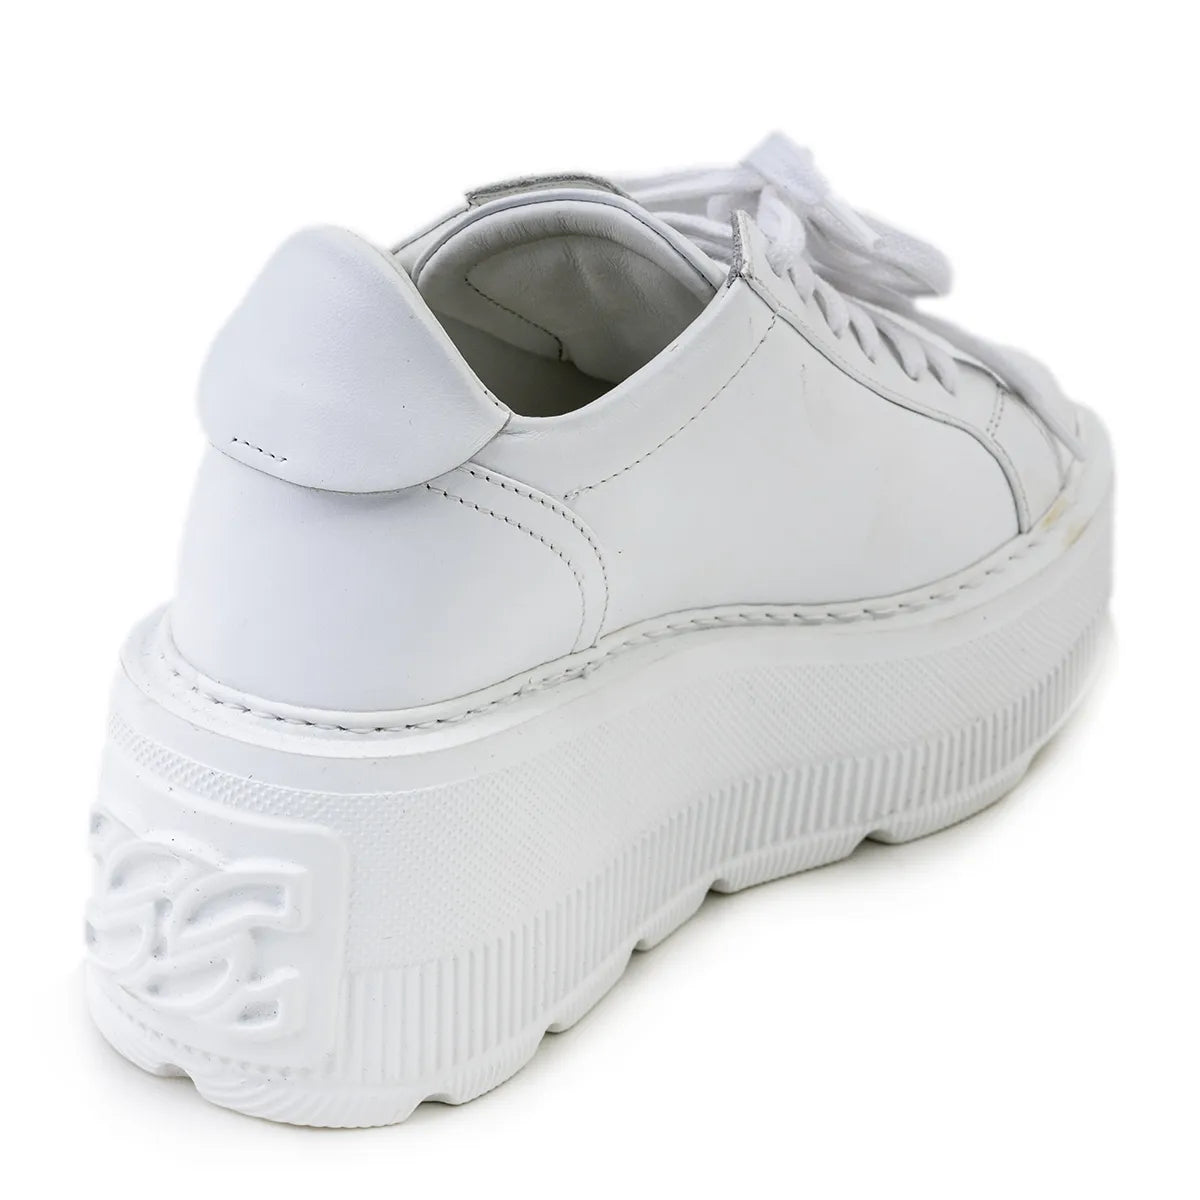 Casadei Sneakers pelle bianca zeppa 70mm